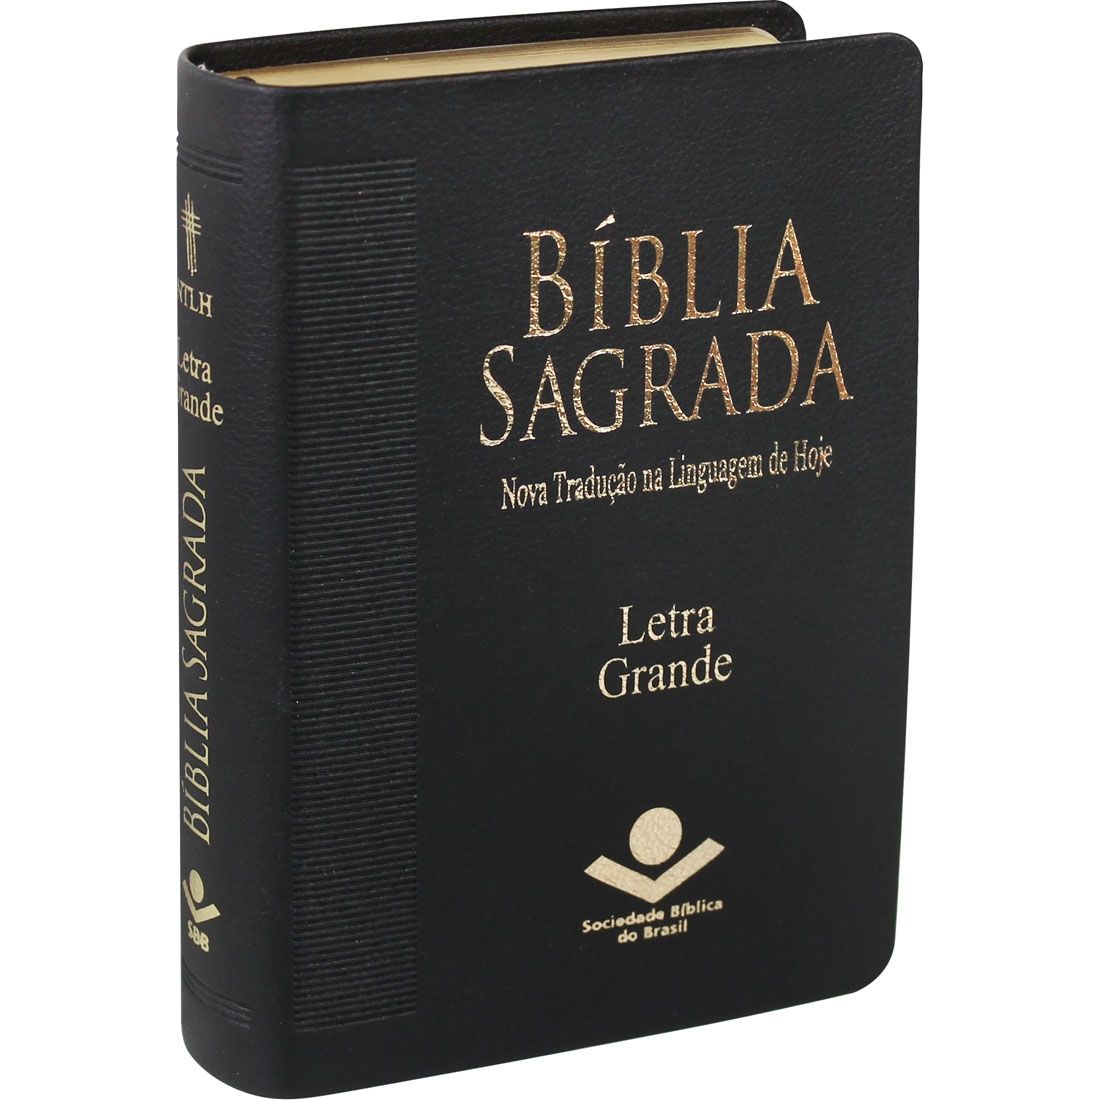 Bíblia Sagrada Letra Grande / Preta - (NTLH) - Universo Bíblico Rs